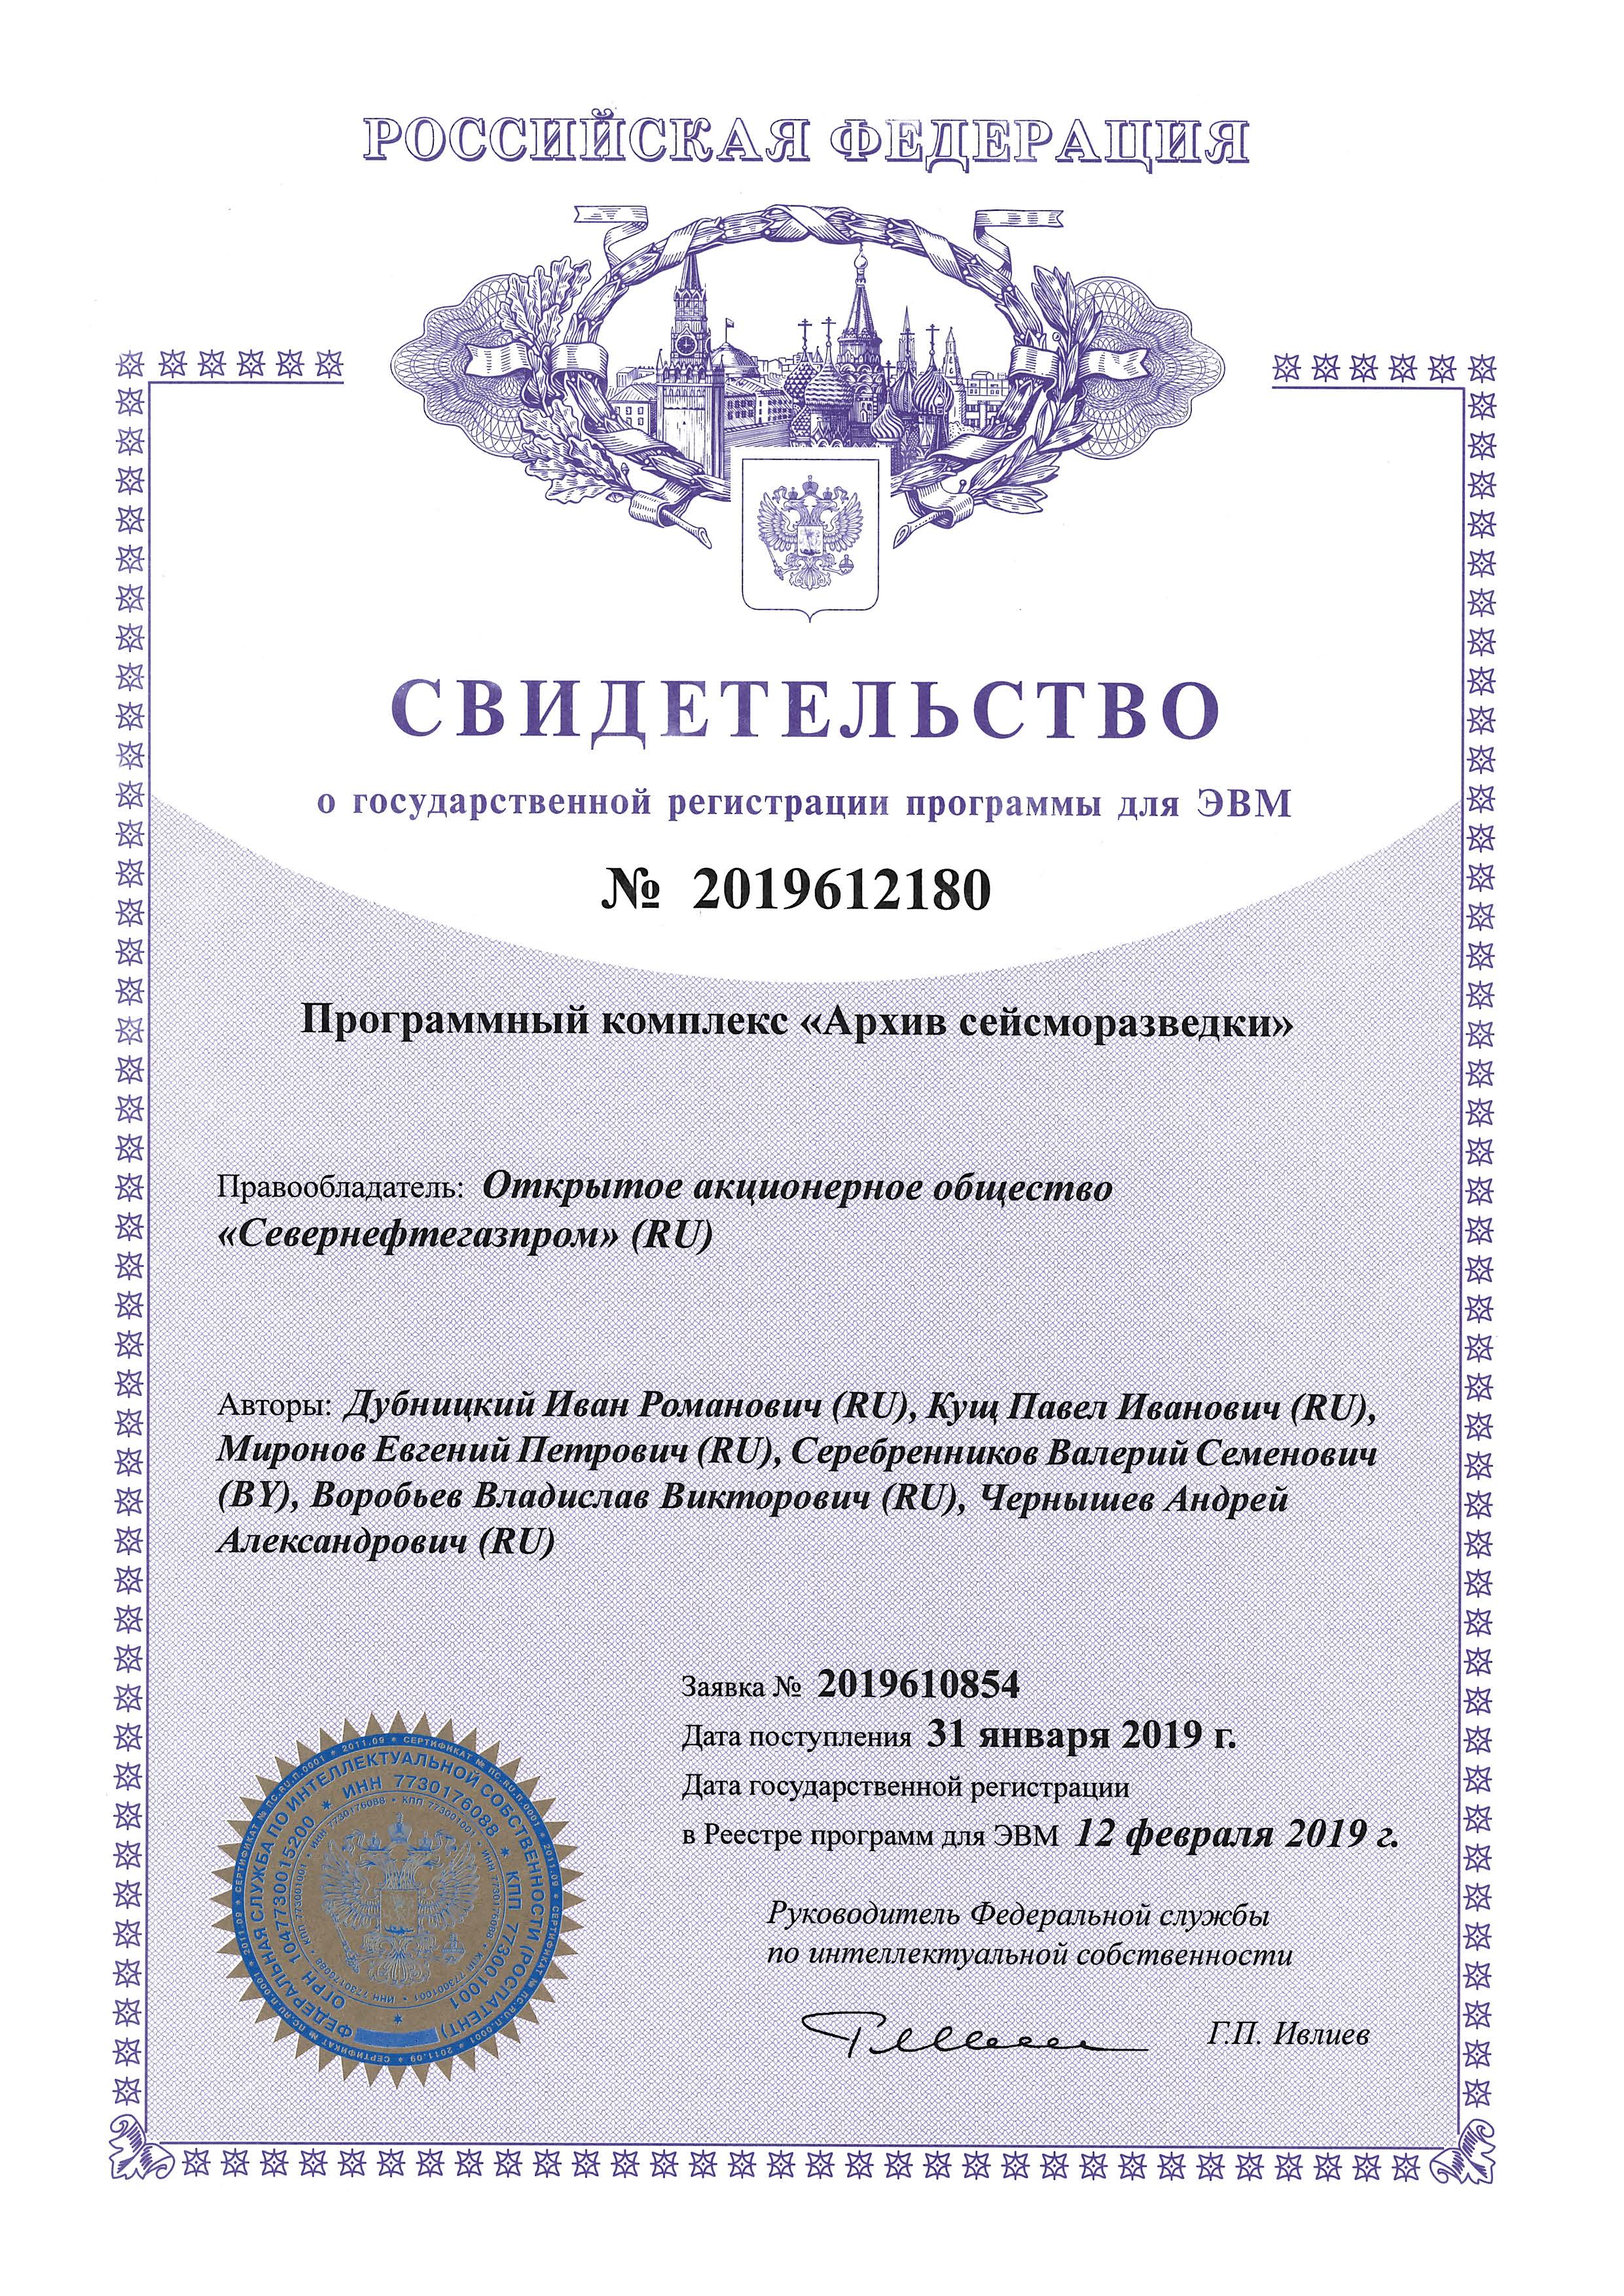 Свидетельство о государственной регистрации программы для ЭВМ №2019612180